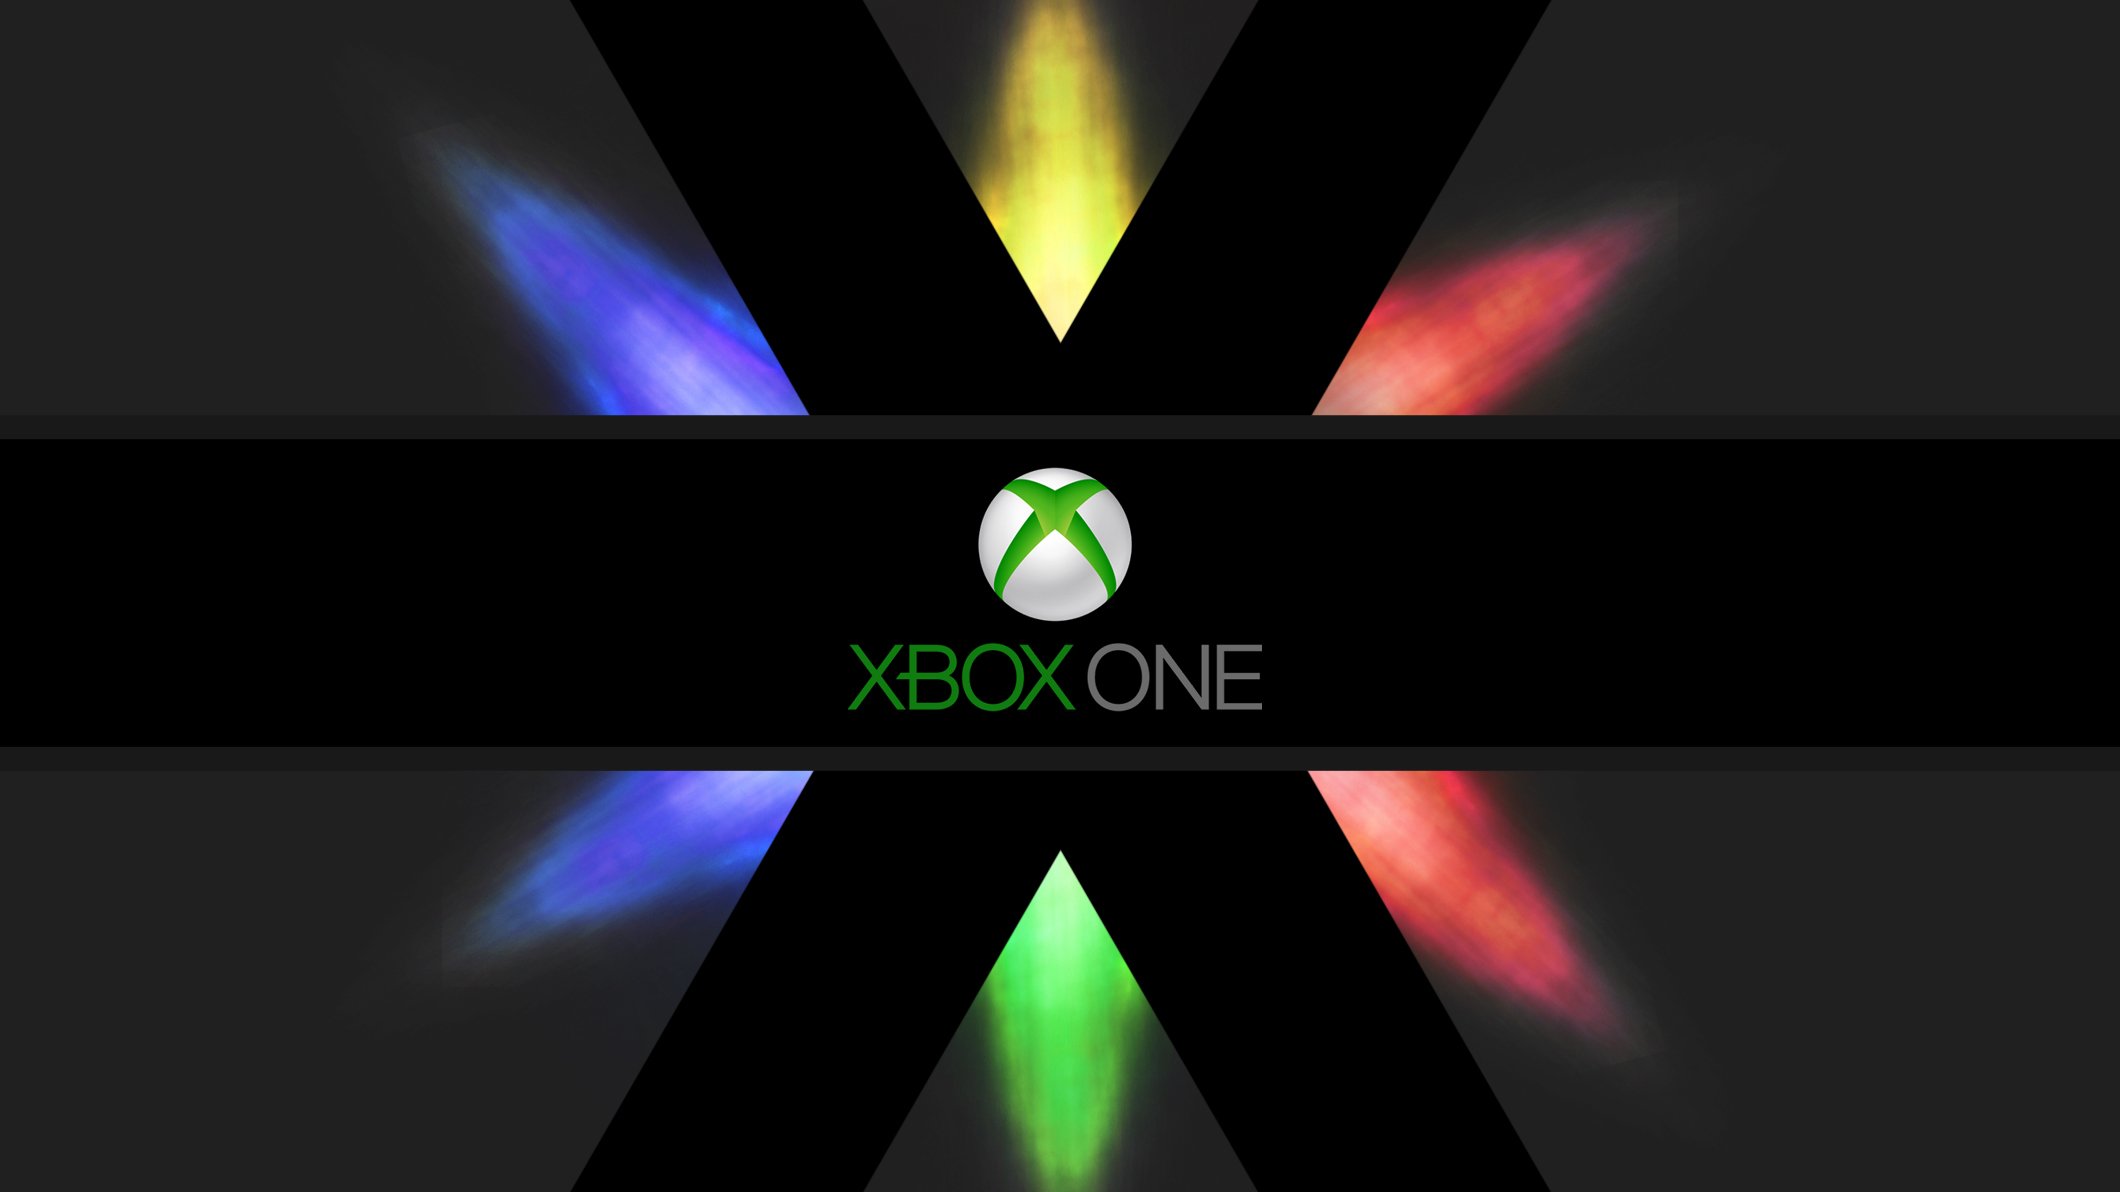 Nếu bạn là người yêu thích hệ thống video game của Microsoft – Xbox One, bạn không nên bỏ qua bộ sưu tập hình nền tuyệt đẹp miễn phí của chúng tôi. Bạn sẽ dễ dàng tải các hình nền tuyệt vời để trang trí màn hình chính của máy.